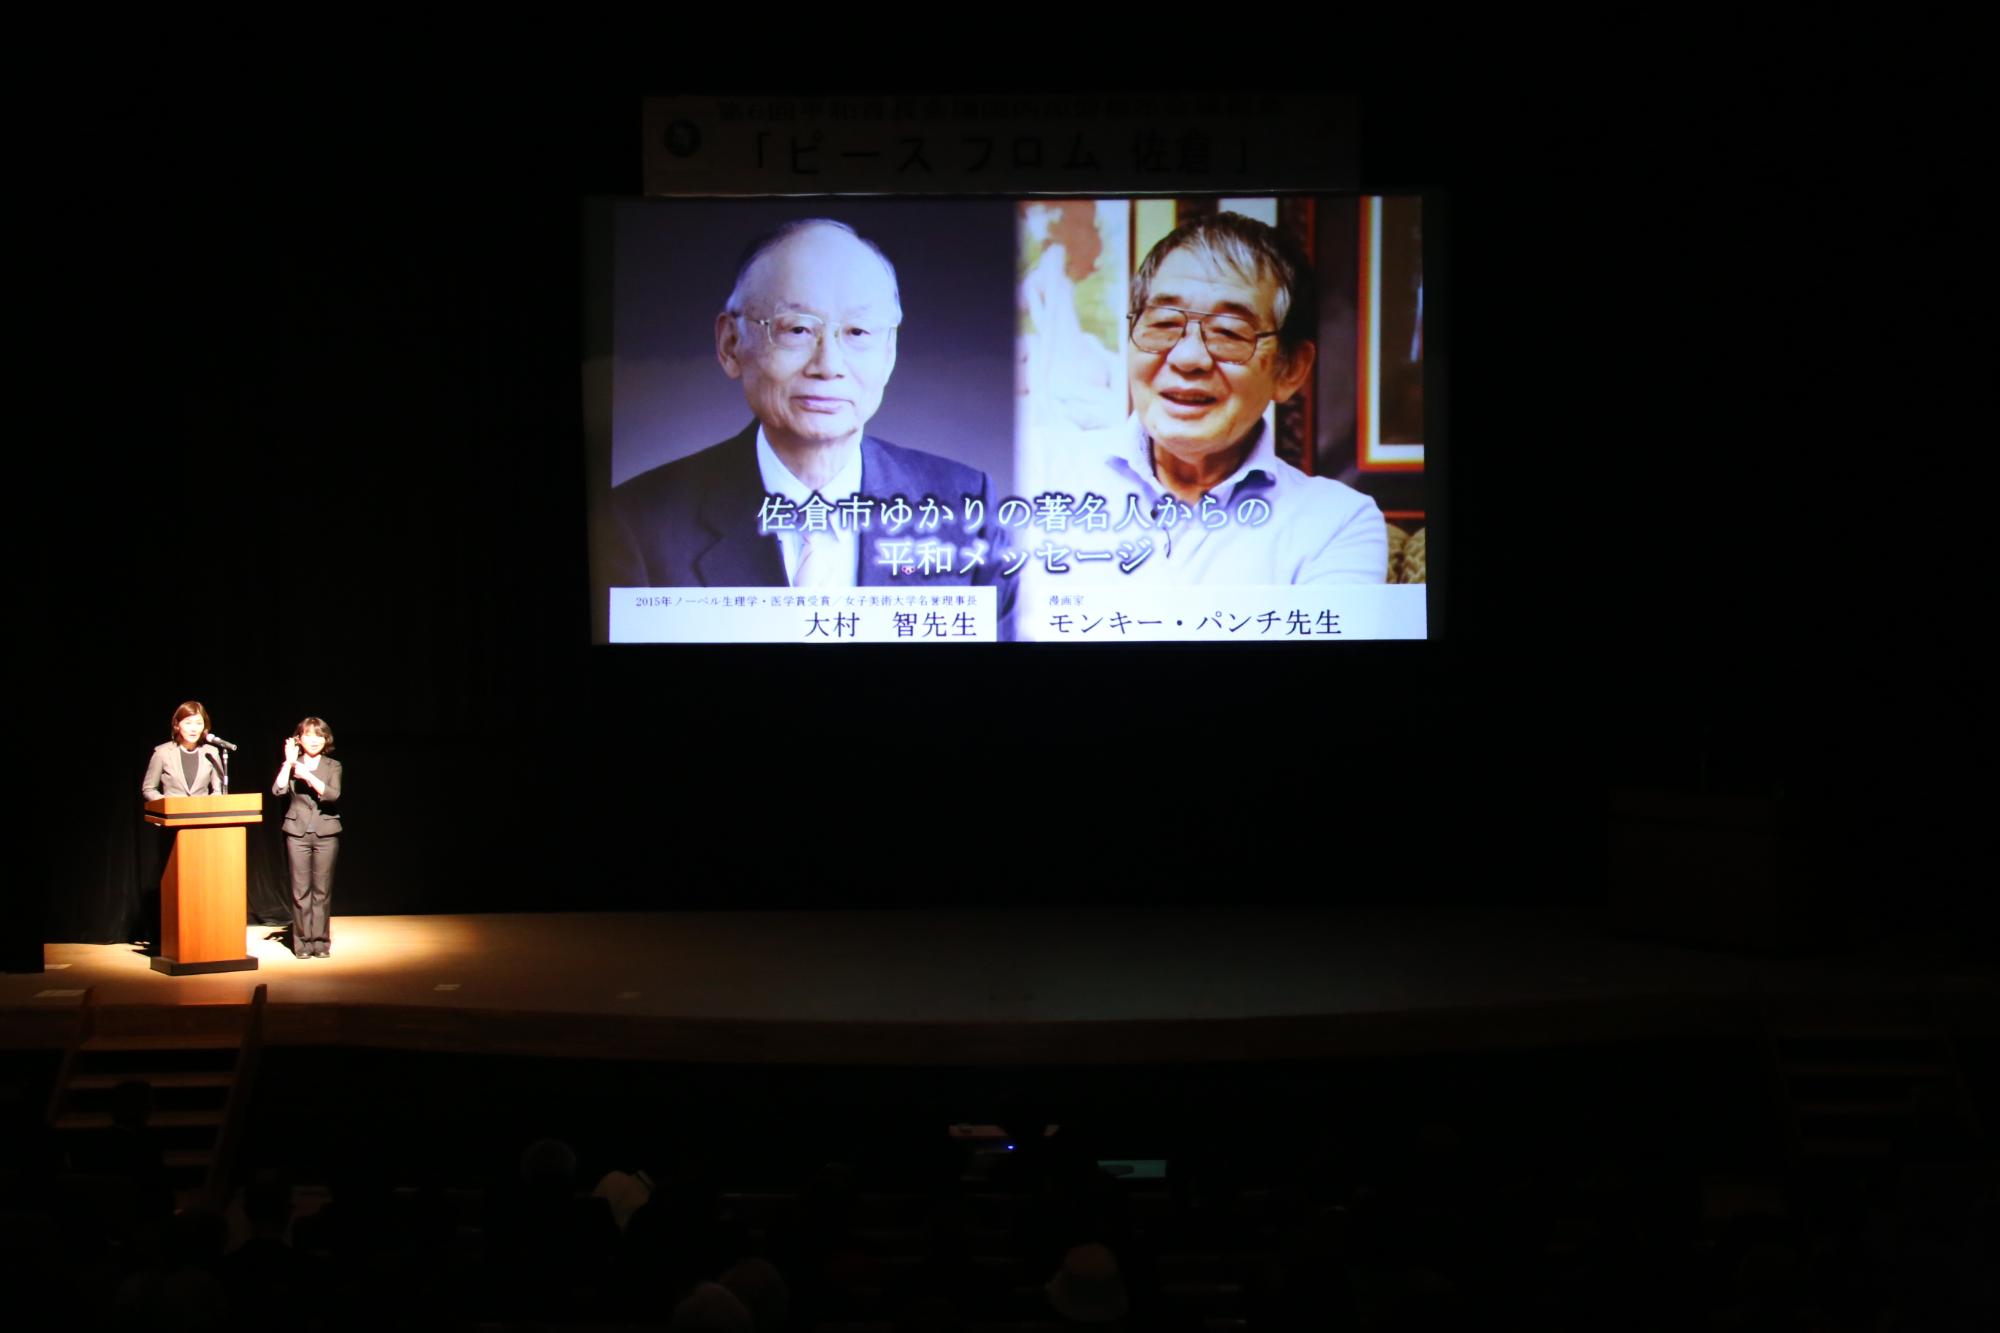 ライトアップされた演台横に立つ女性2名と、2名の著名人の写真がプロジェクトスクリーンに映っている写真